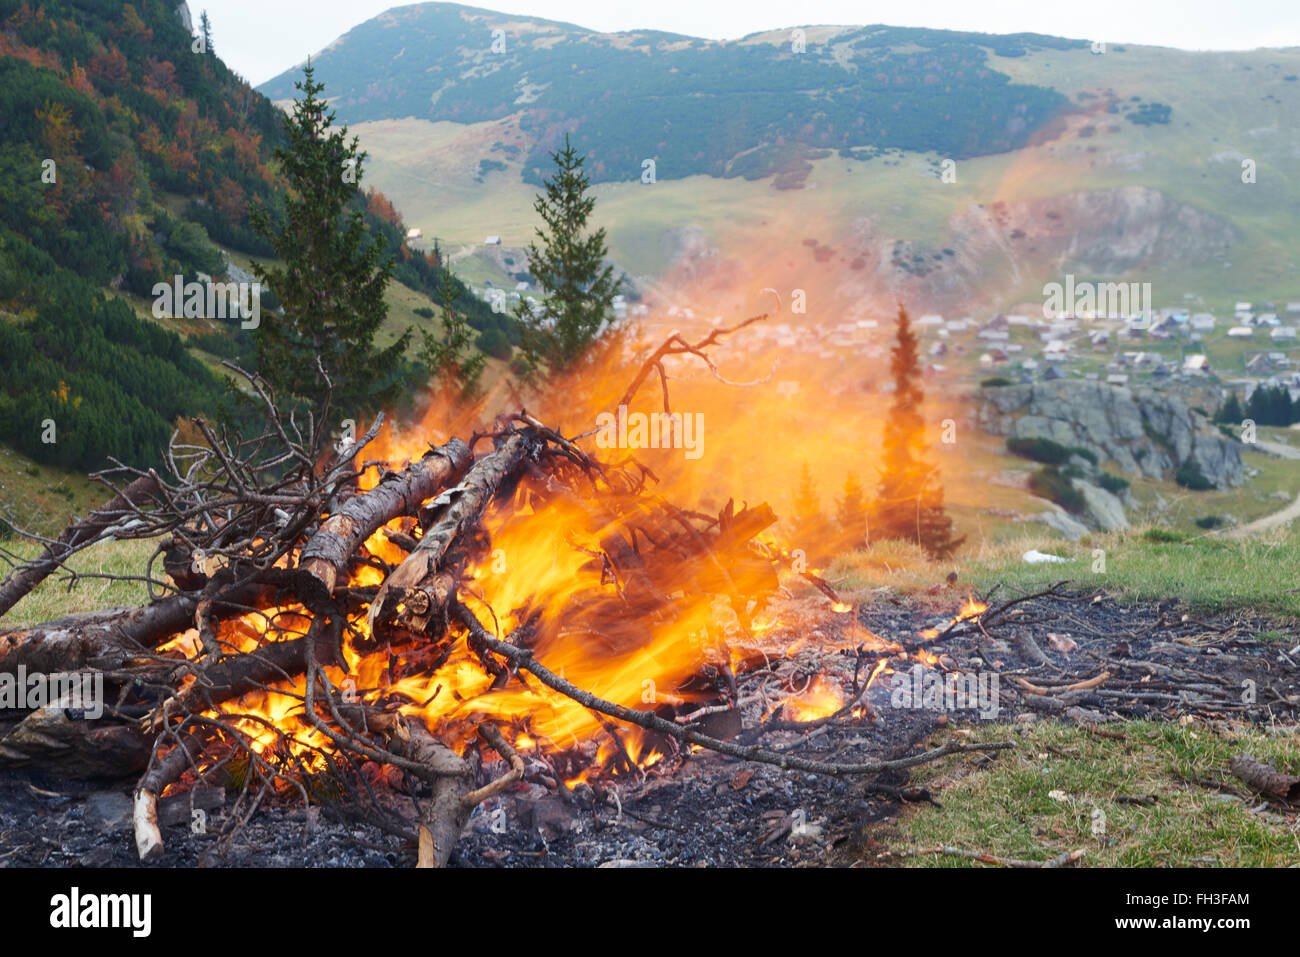 Wandern Menschen bereiten leckere Würstchen am Lagerfeuer Stockfoto